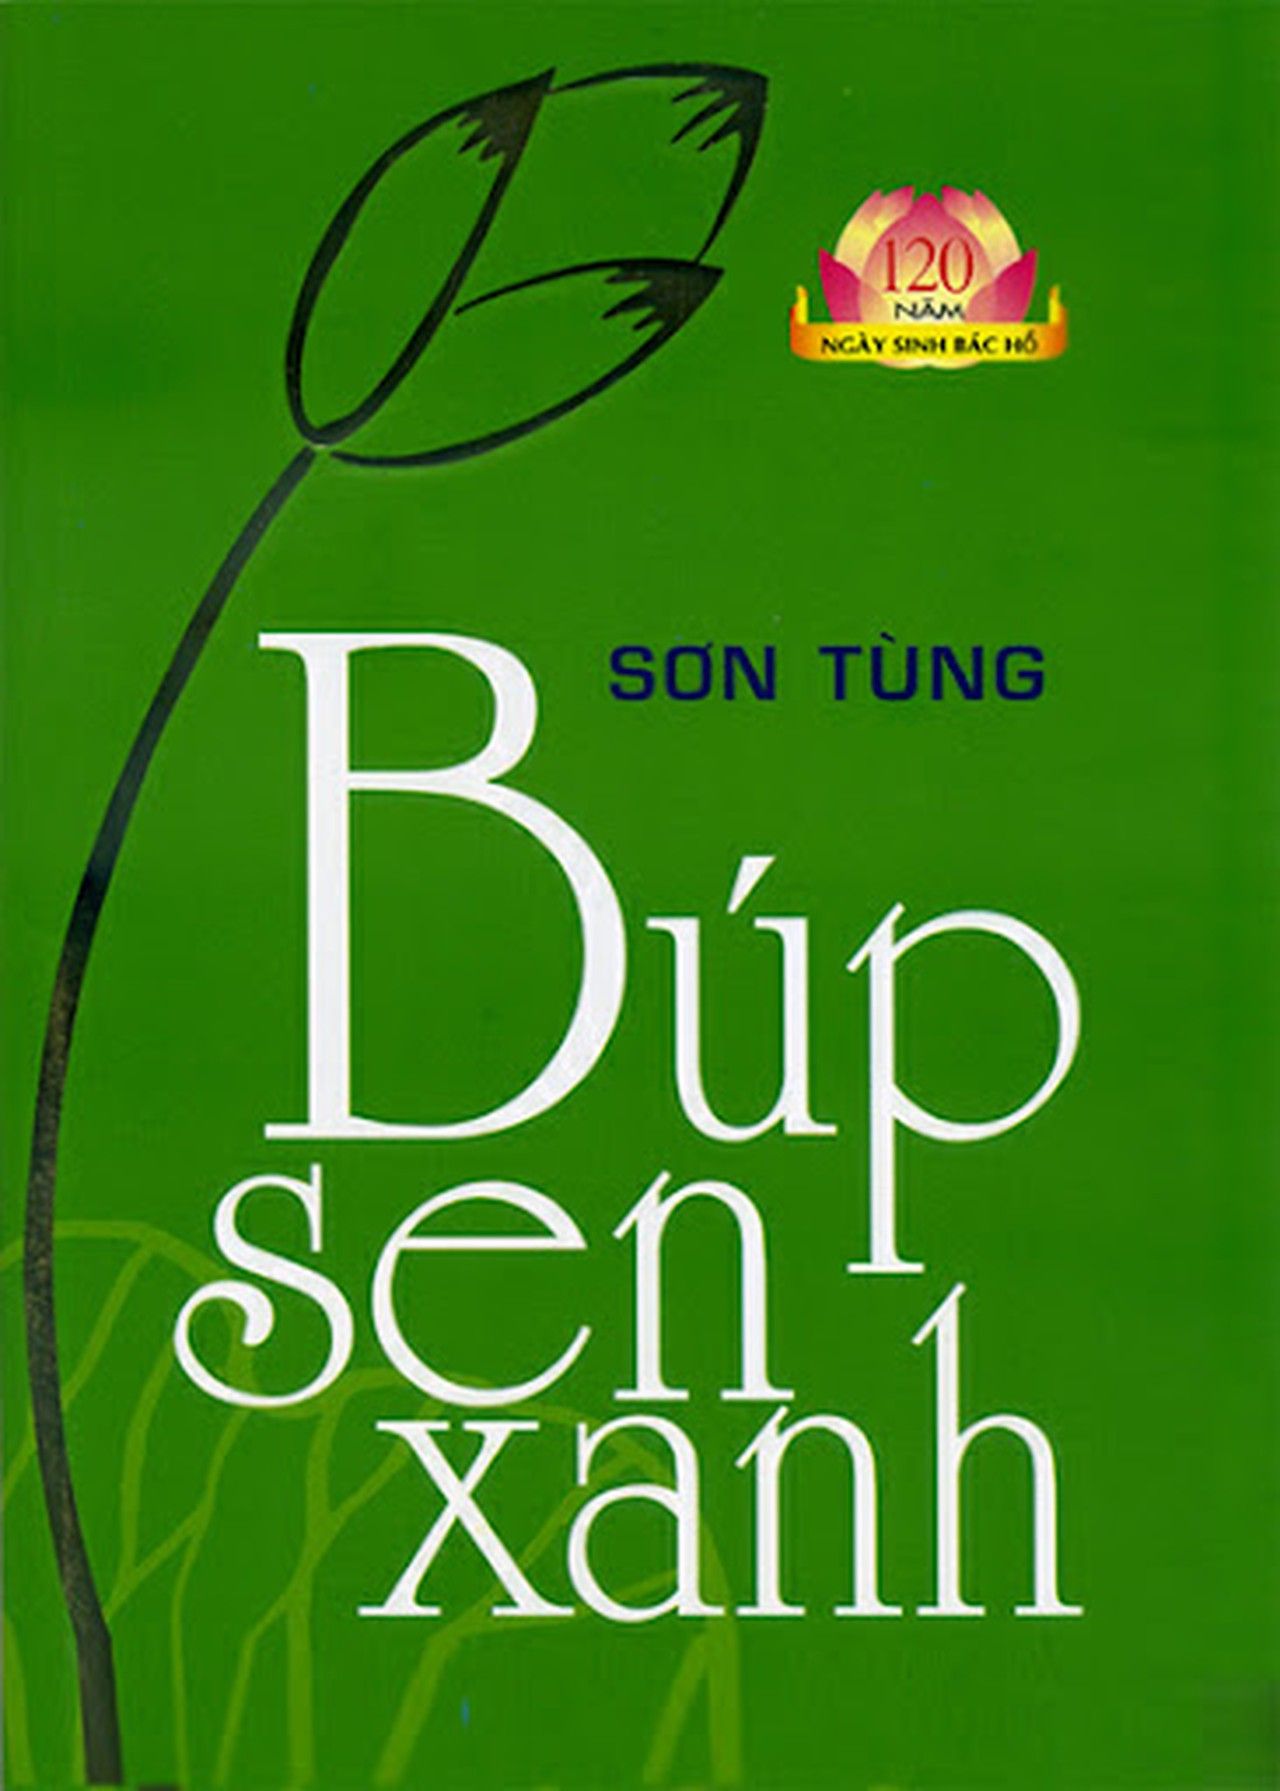 Nhà văn Sơn Tùng - tác giả ‘Búp sen xanh’ đã qua đời